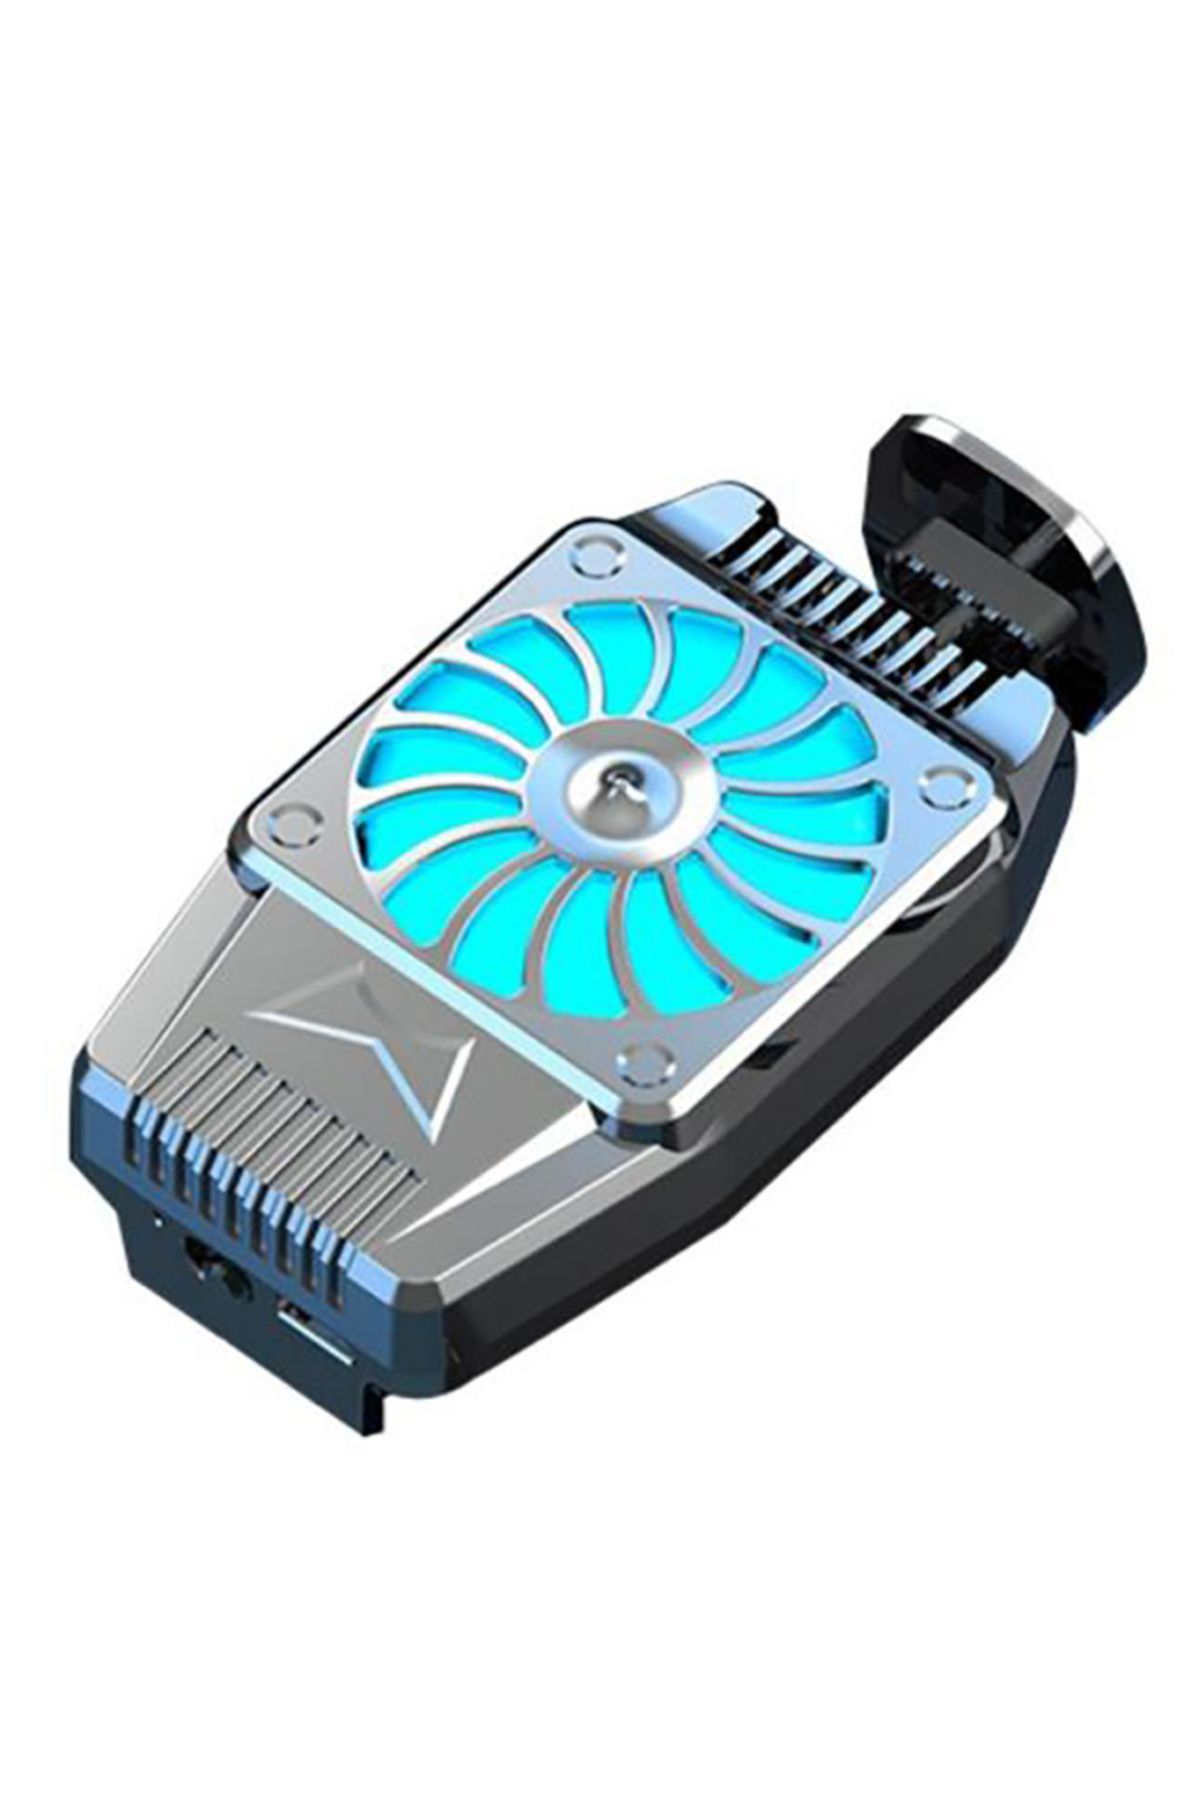 Foxyn H-15 Cep Telefonu Oyun Soğutucu Sessiz Güçlü Soğutma Fanı Gamepad Tutucu Standı Radyatör